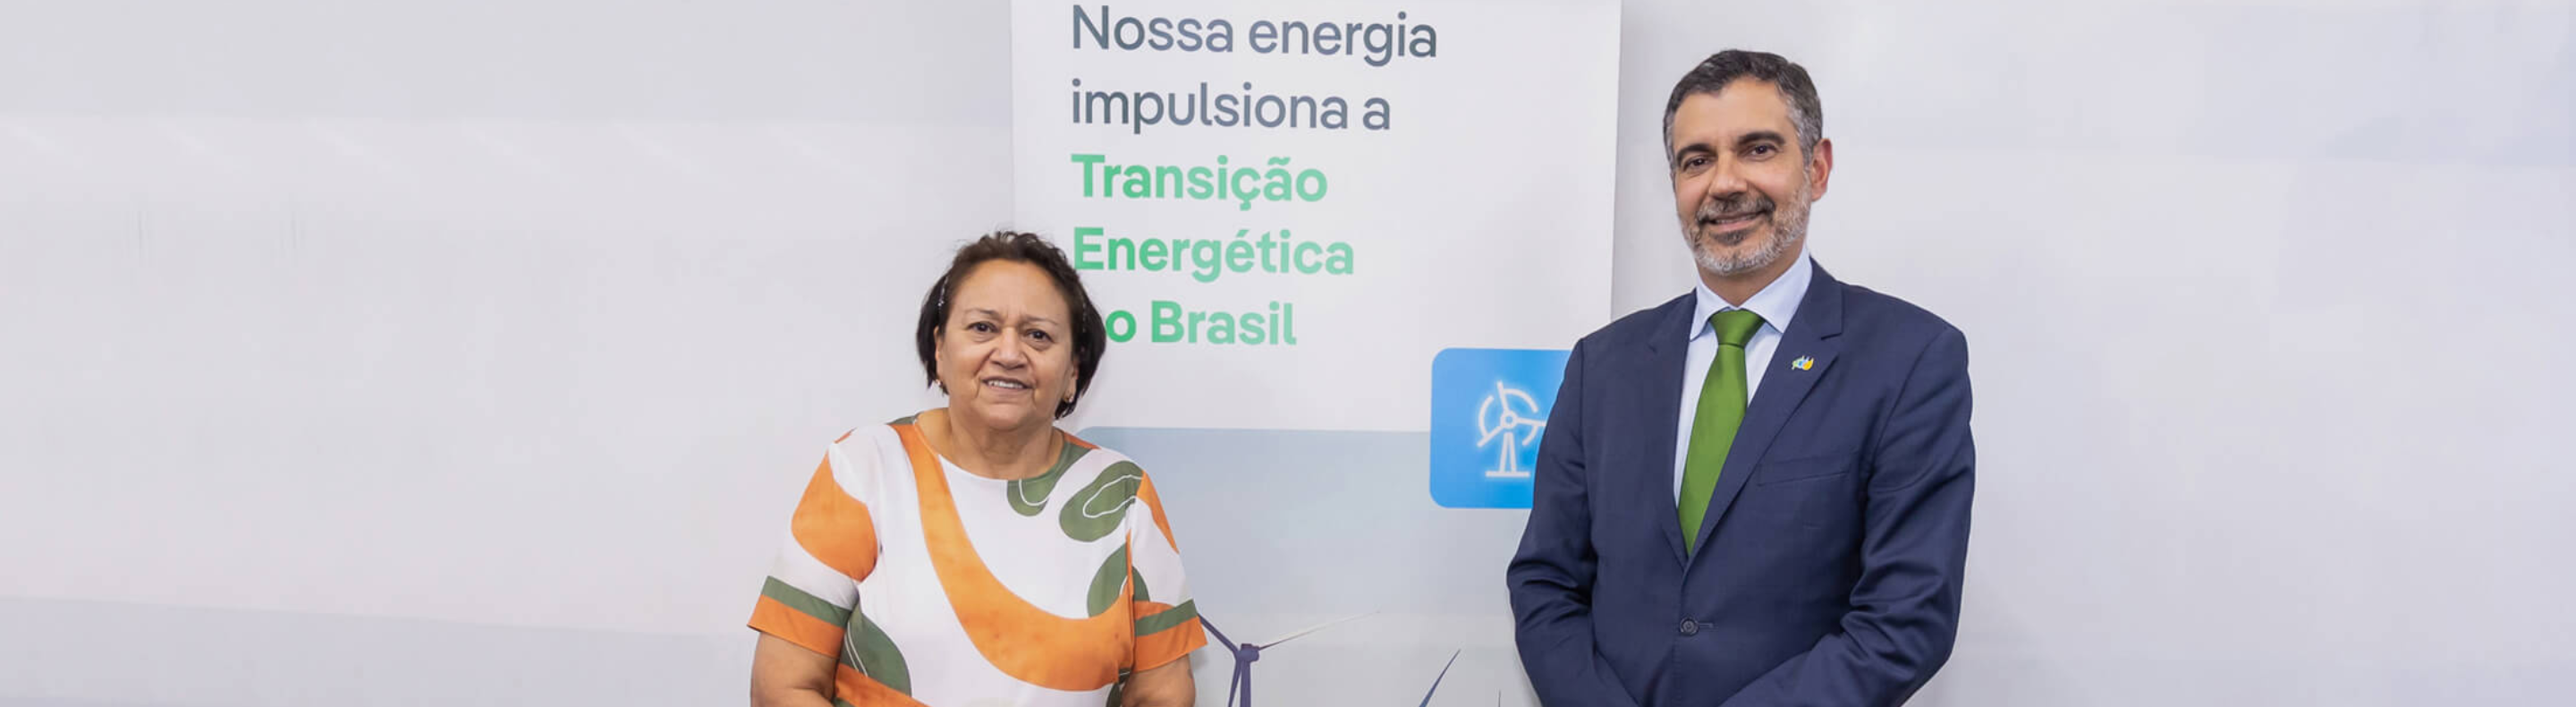 Diretor de Hidráulica e Offshore da Neoenergia, Marcelo Lopes, e a governadora do Rio Grande do Norte, Fátima Bezerra.